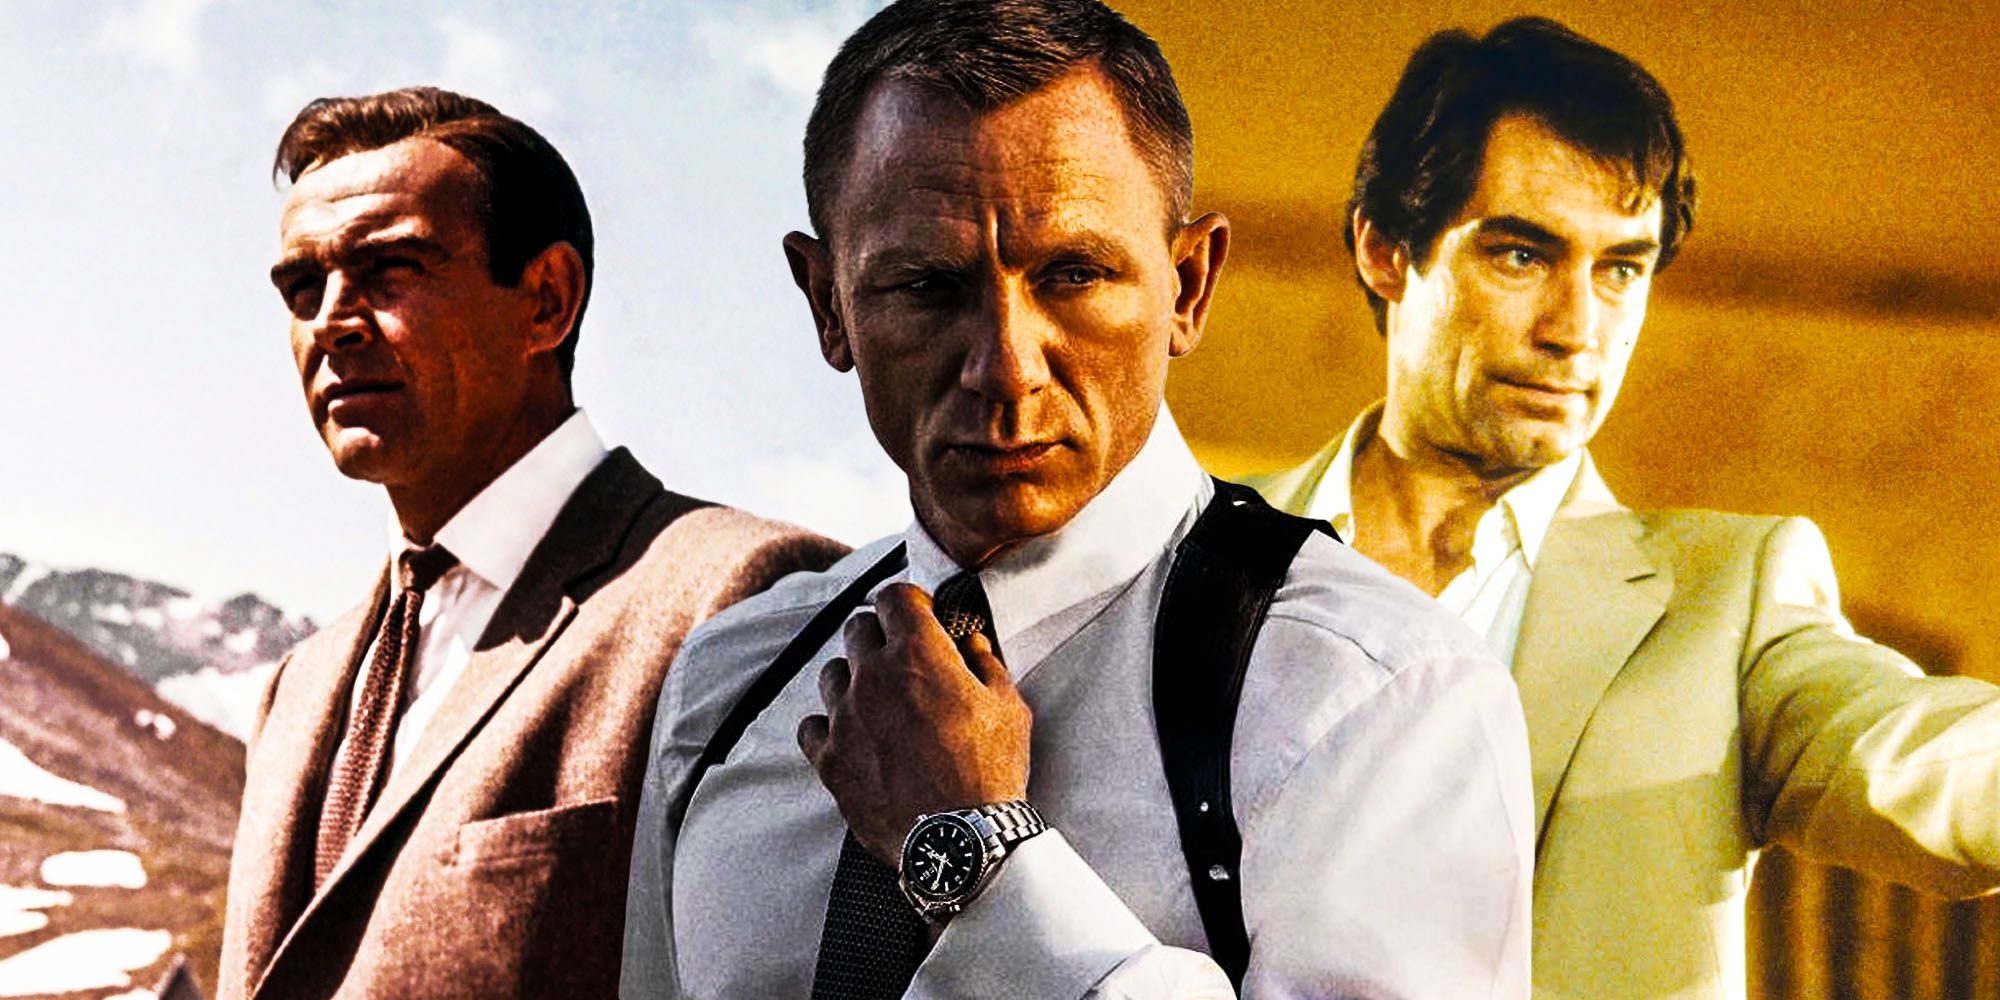 Sean Connery Daniel Craig Timothy Dalton partage le même film James Bond préféré